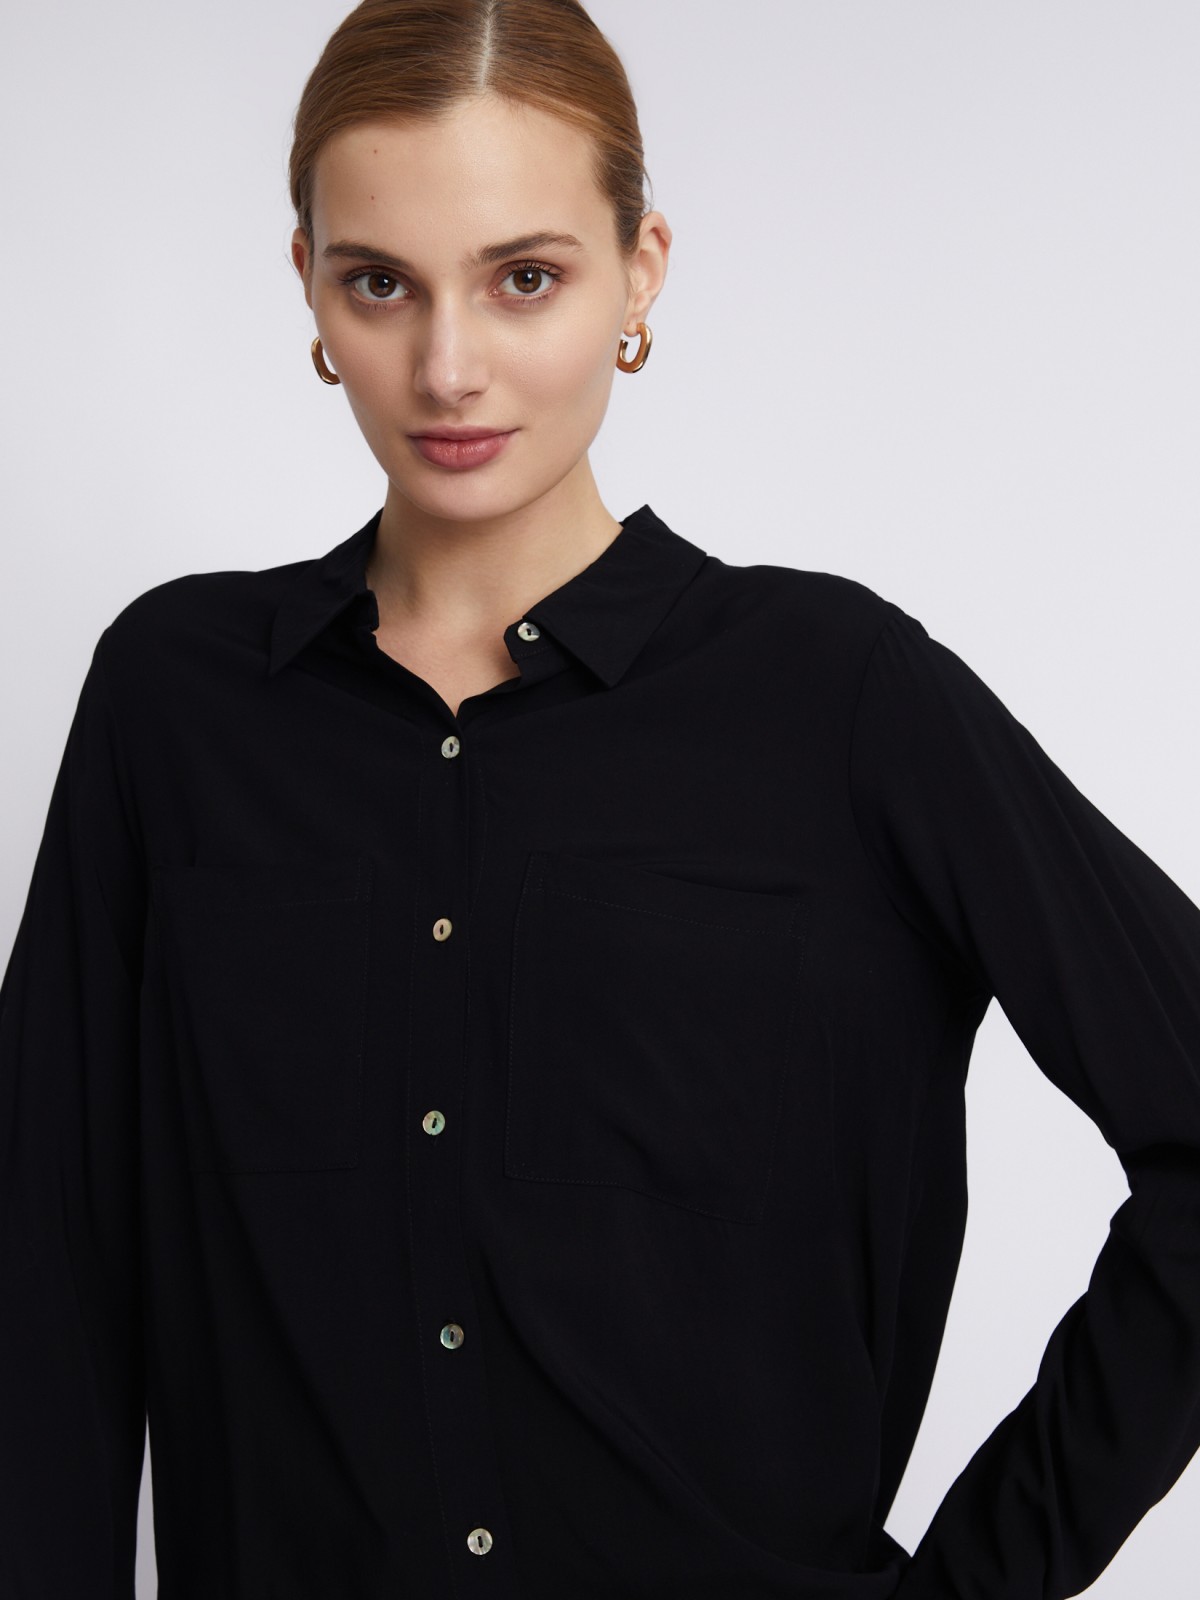 Офисная рубашка из вискозы с карманами и подхватами на рукавах zolla 023311162052, цвет черный, размер S - фото 3